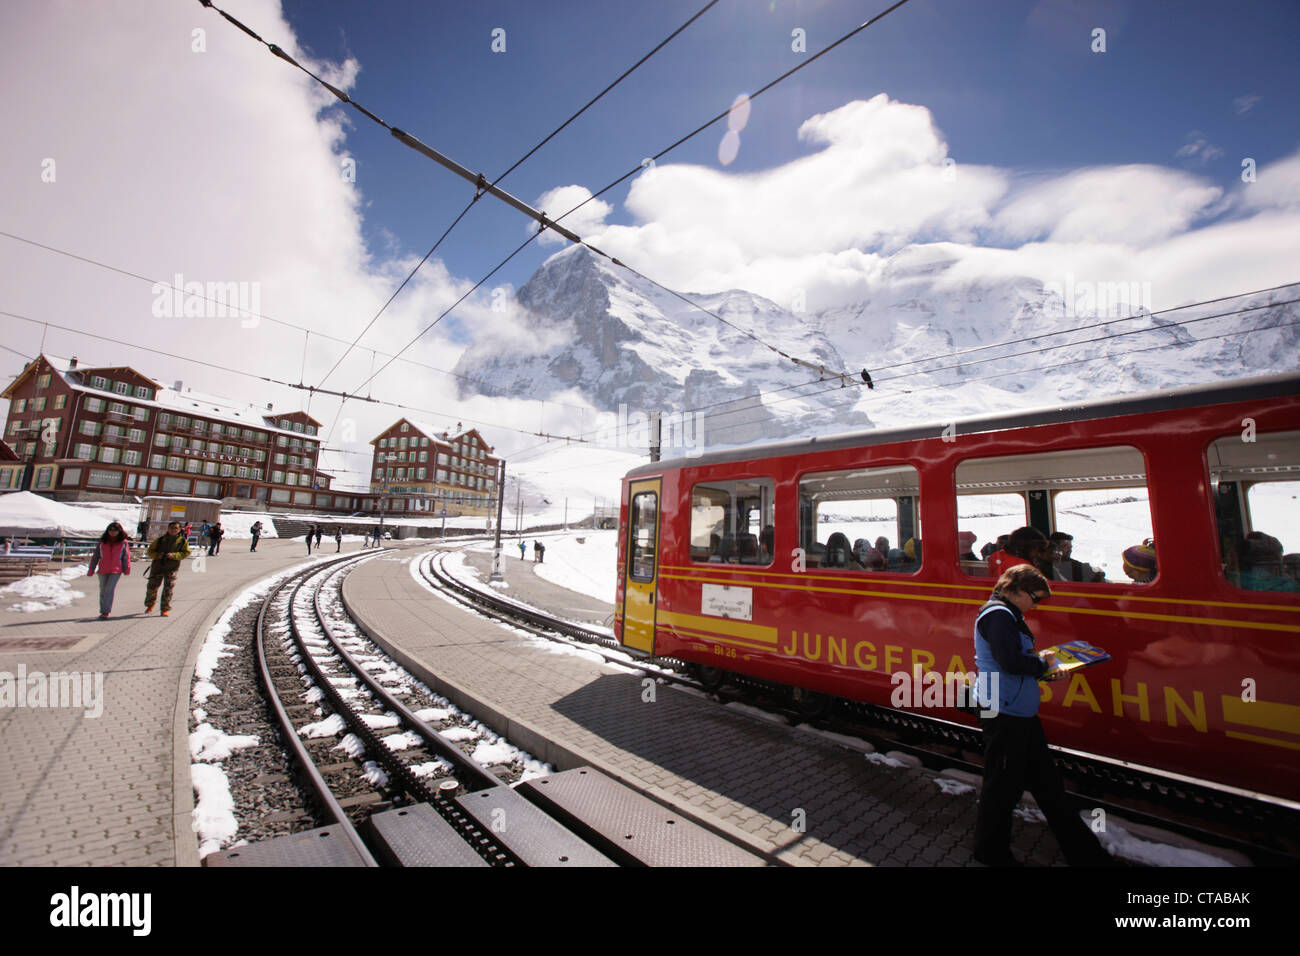 Jungfraujoch train on the kleinen Scheidegg, Jungfraujoch, Grindelwald, Bernese Oberland, Switzerland Stock Photo